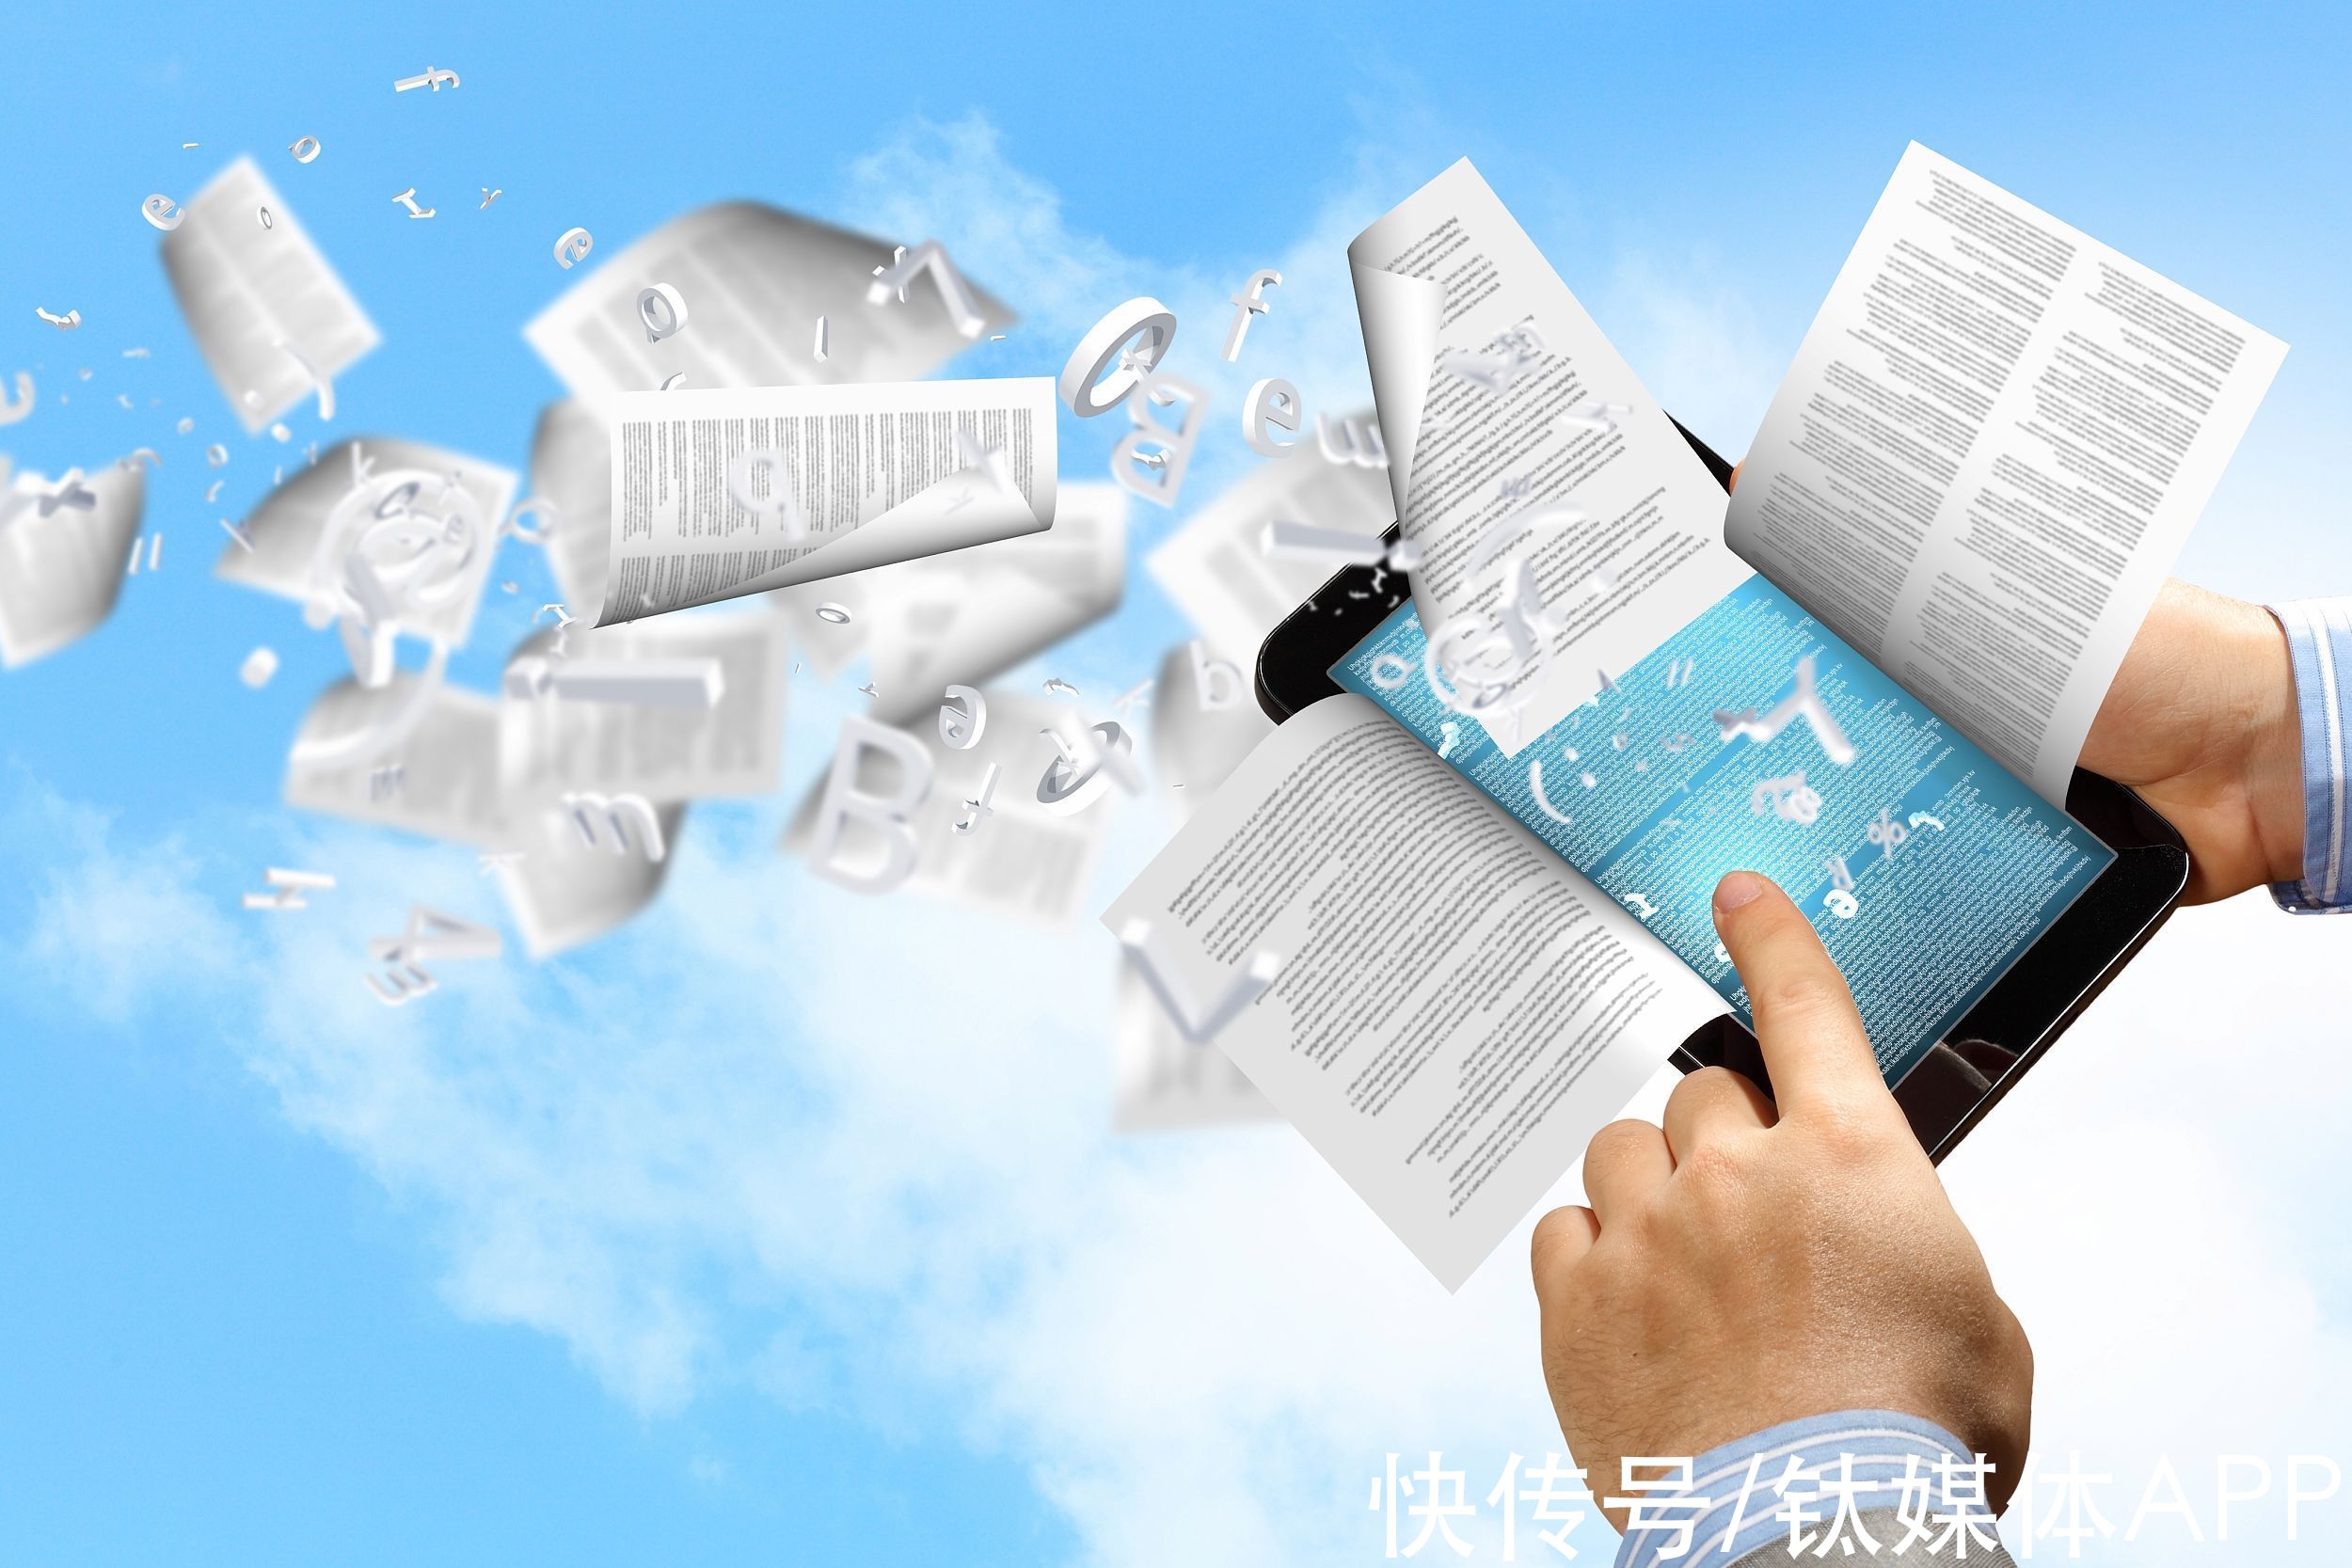 付费阅读|中国网民真的很抗拒付费阅读吗？